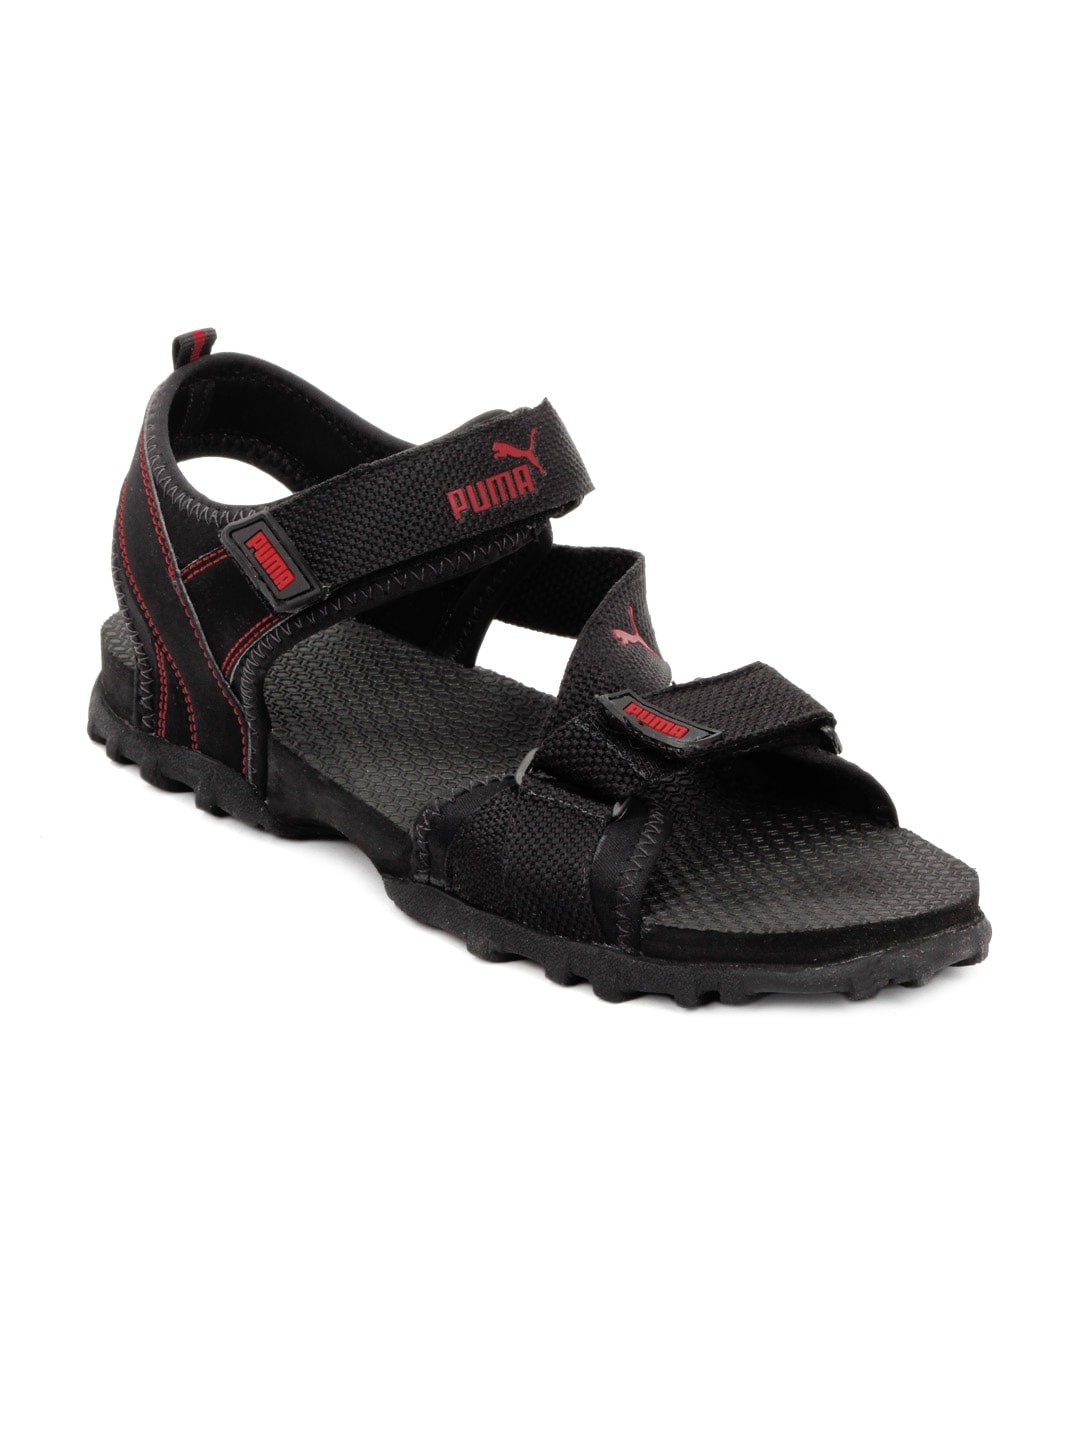 Puma Men Black Apex Sandals